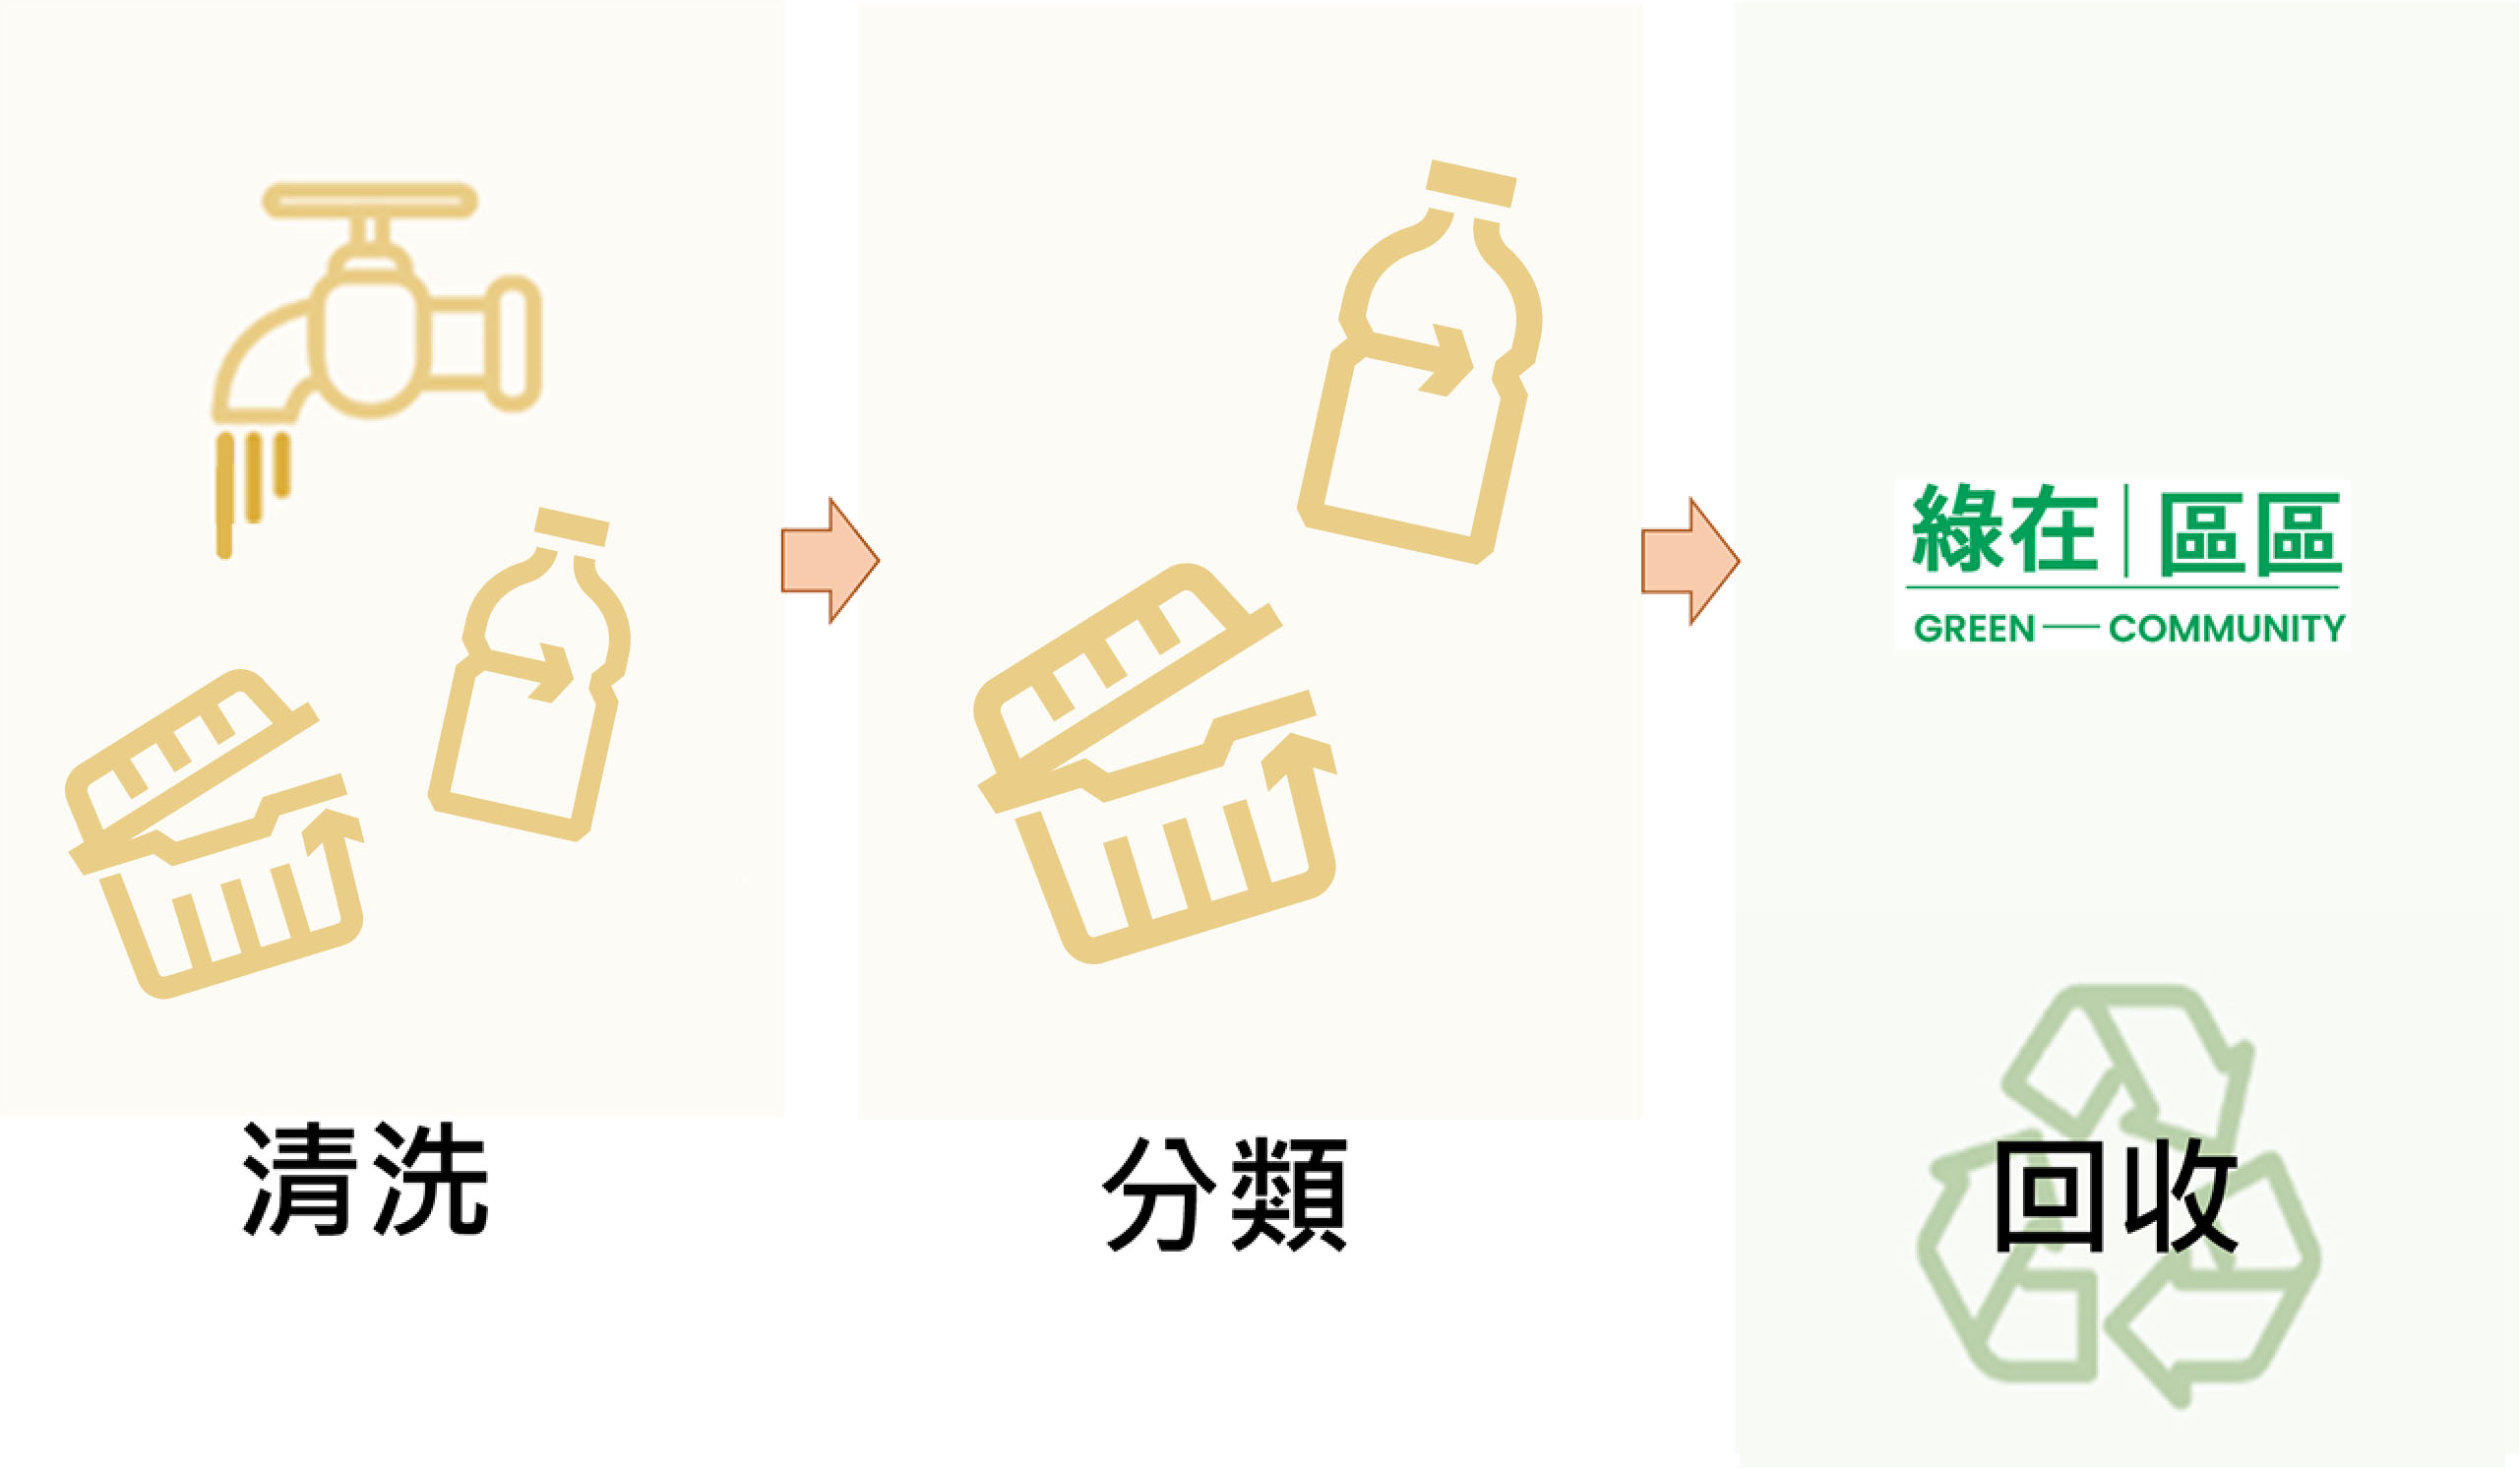 乾淨回收廢塑膠